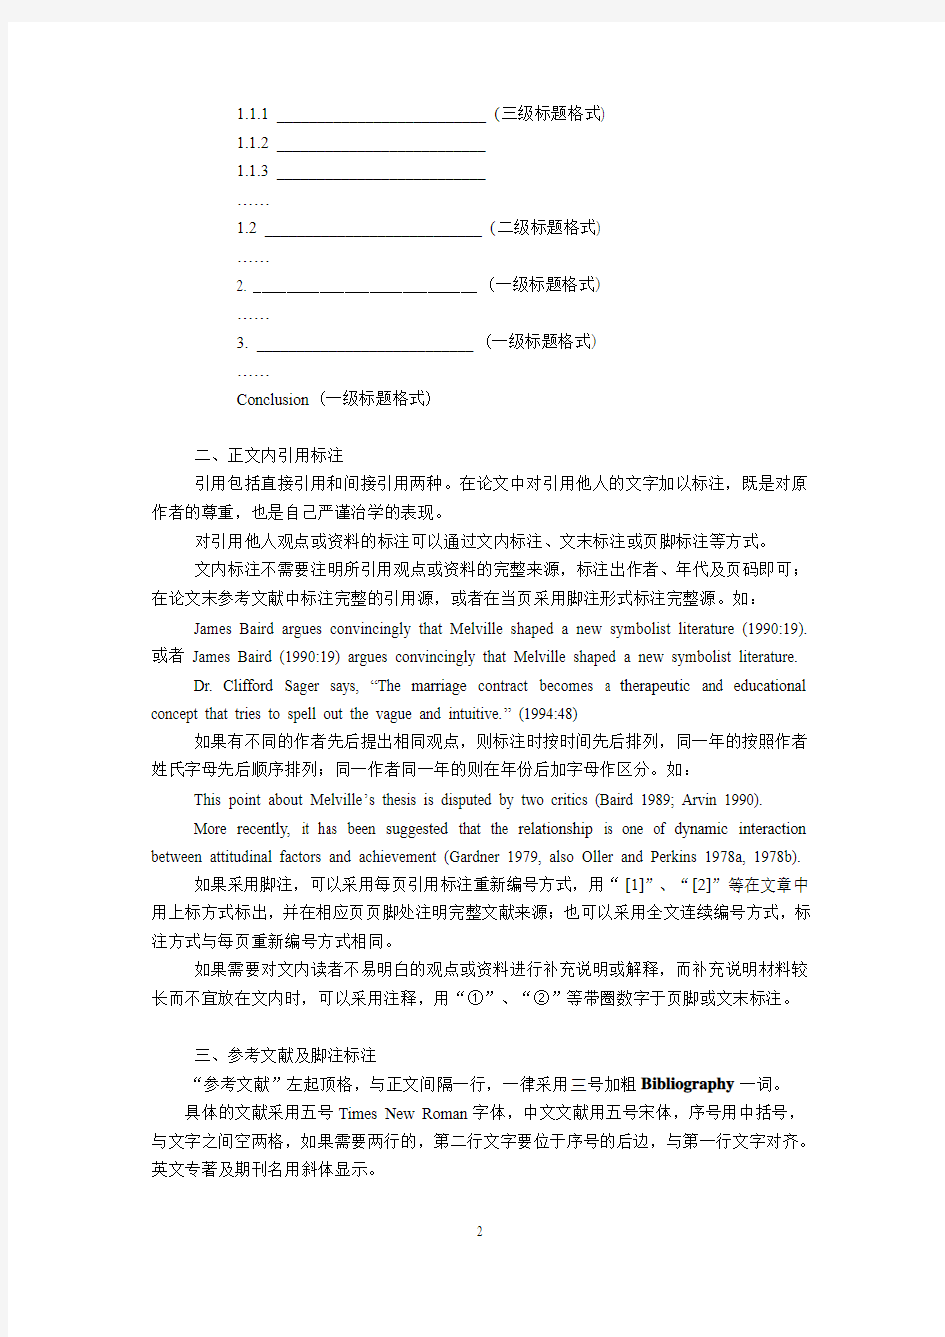 北京大学最新英语专业毕业论文格式要求及范本 最详细